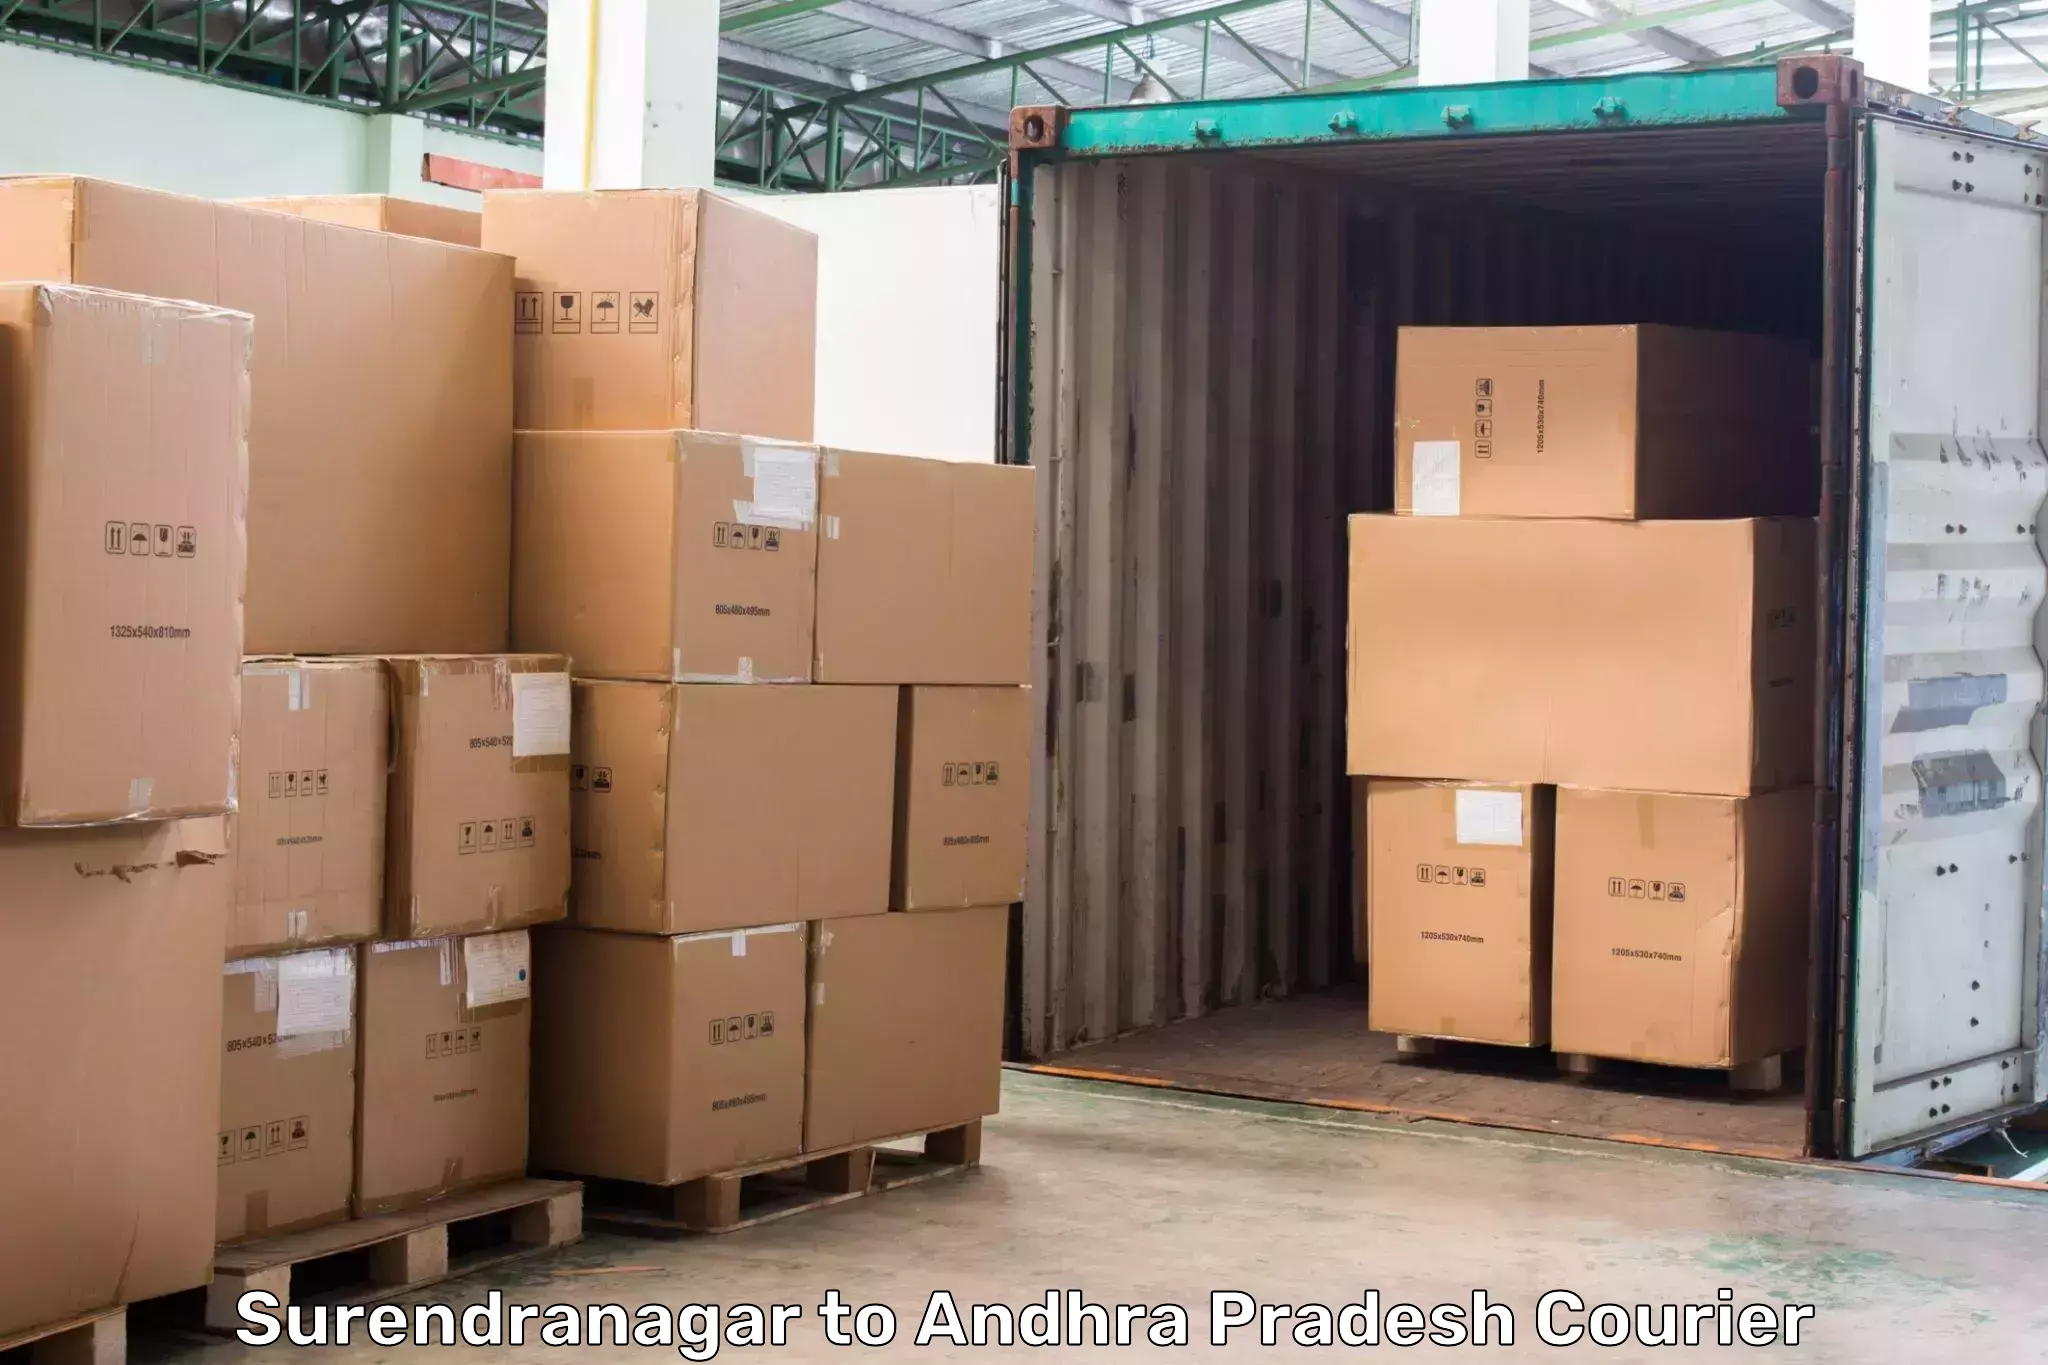 Reliable courier service Surendranagar to Gudivada